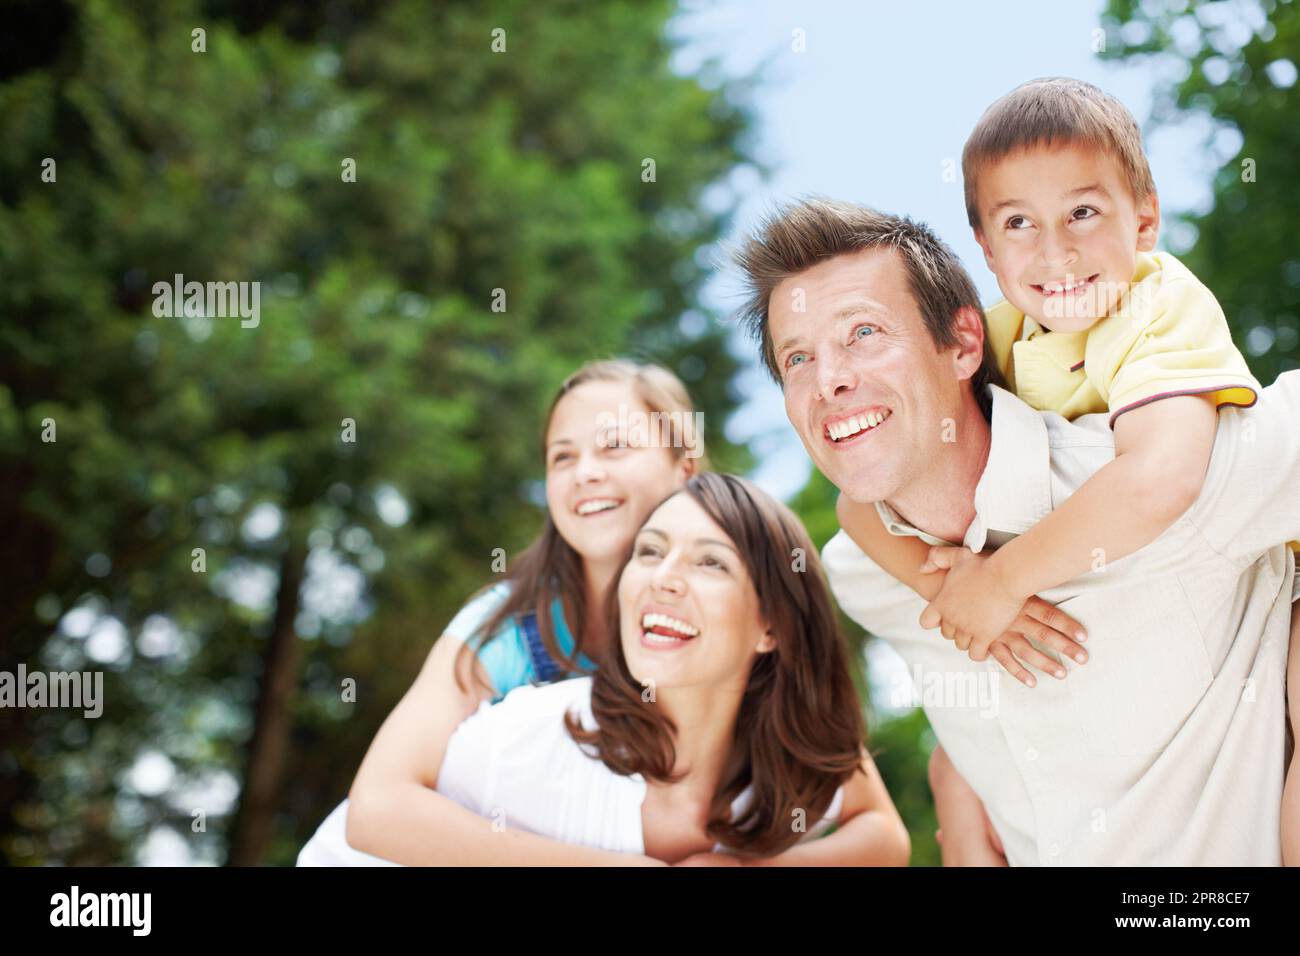 Una famiglia meravigliosa che si gode una giornata fuori insieme. Vista bassa di una madre e di un padre felici e devoti che portano i loro figli sulle spalle - CopySpace. Foto Stock